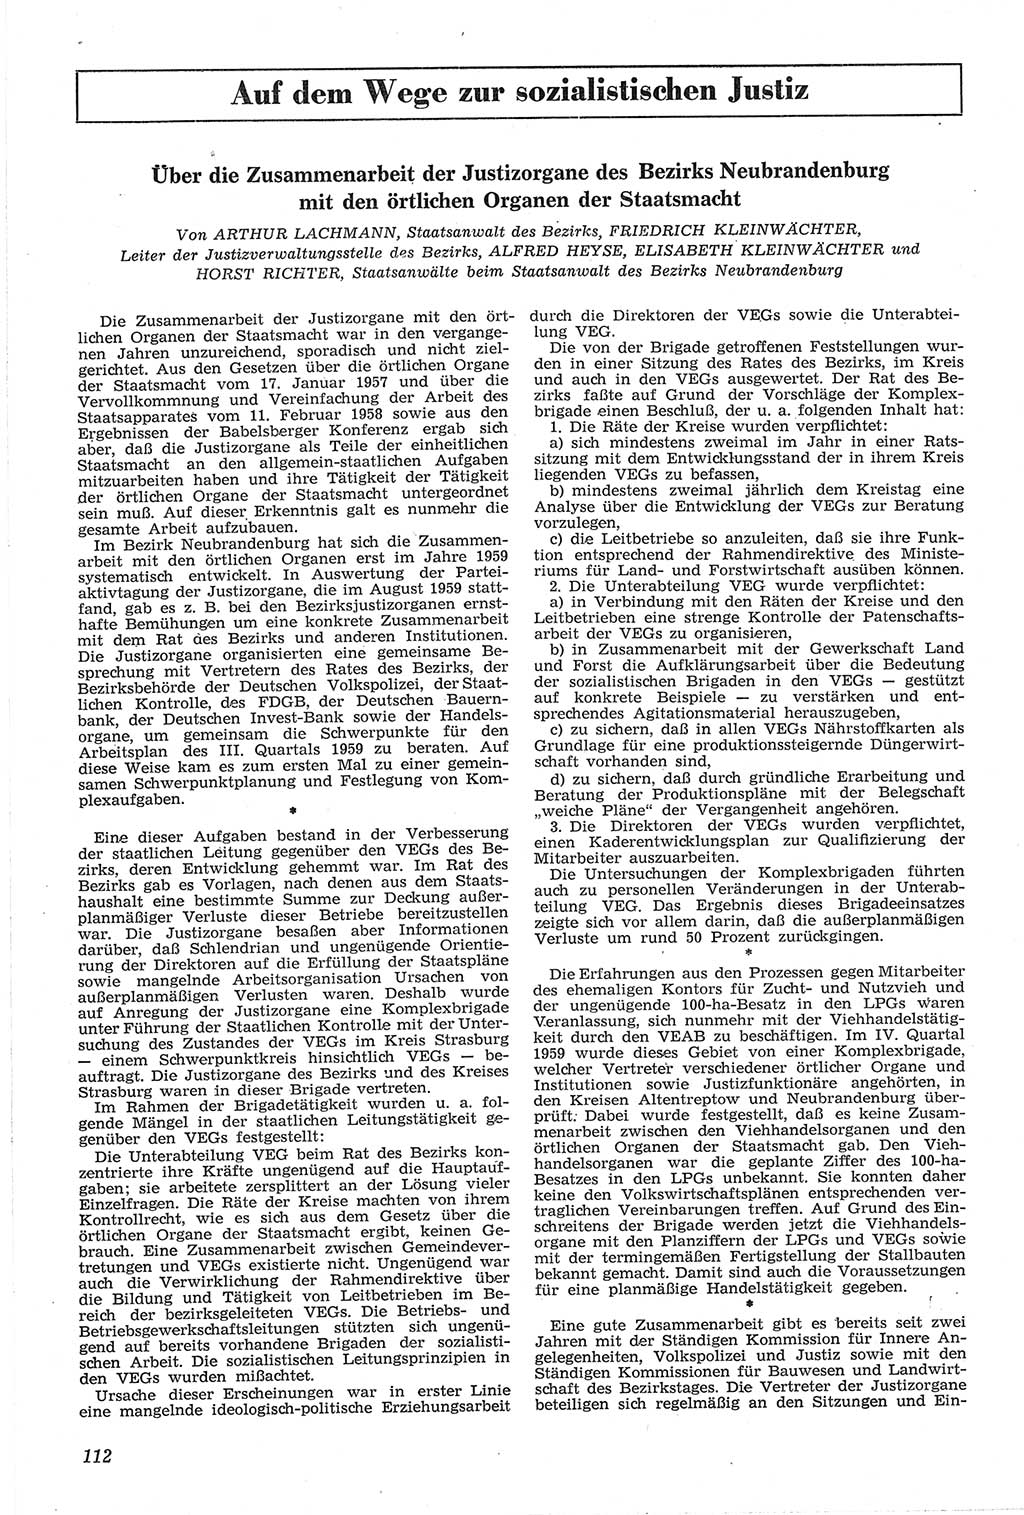 Neue Justiz (NJ), Zeitschrift für Recht und Rechtswissenschaft [Deutsche Demokratische Republik (DDR)], 14. Jahrgang 1960, Seite 112 (NJ DDR 1960, S. 112)